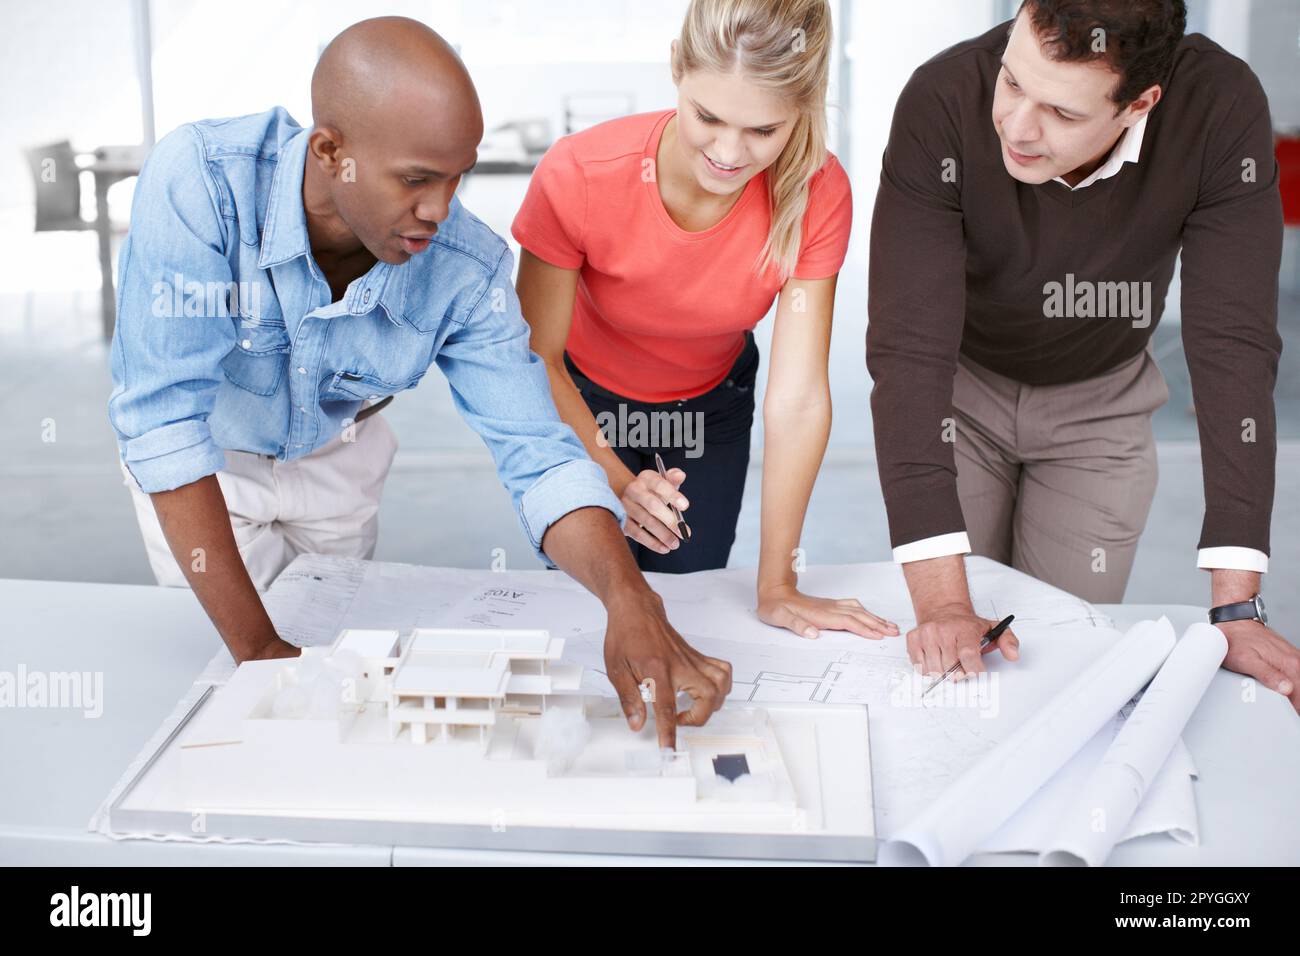 Ich schlage vor, wir ändern das Layout dort drüben... drei Architekten diskutieren ihr Architekturmodell. Stockfoto